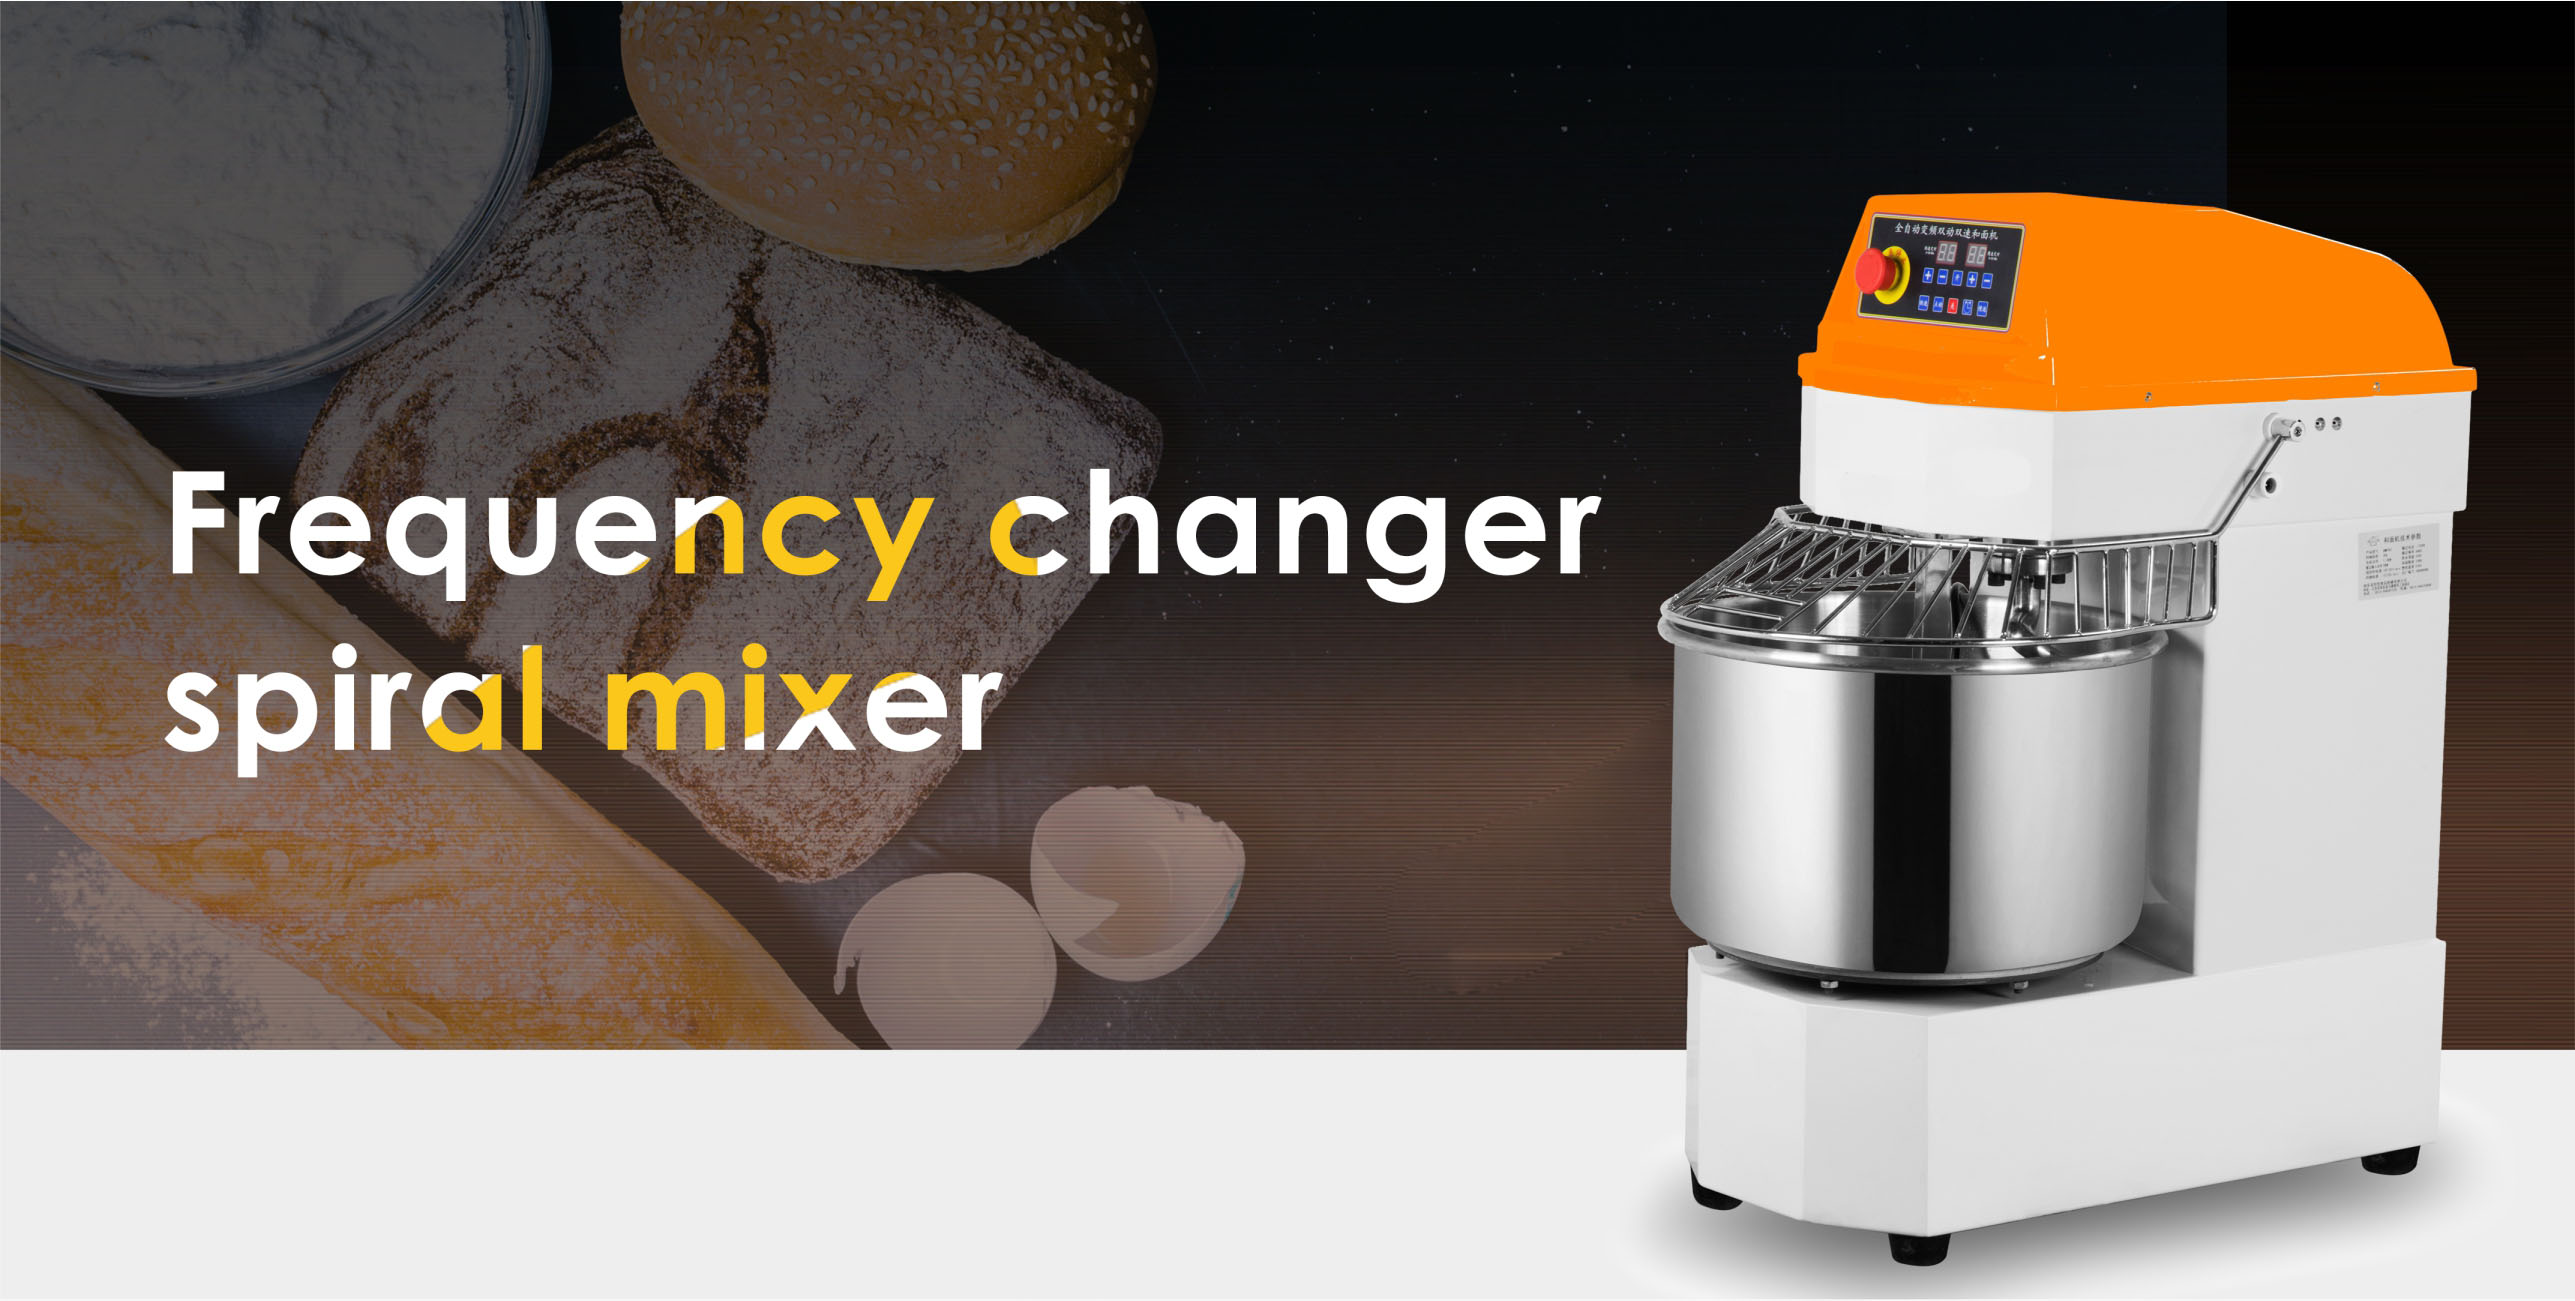 DH系列双速变频和面机 DH series double speeds frequency changer spiral mixer